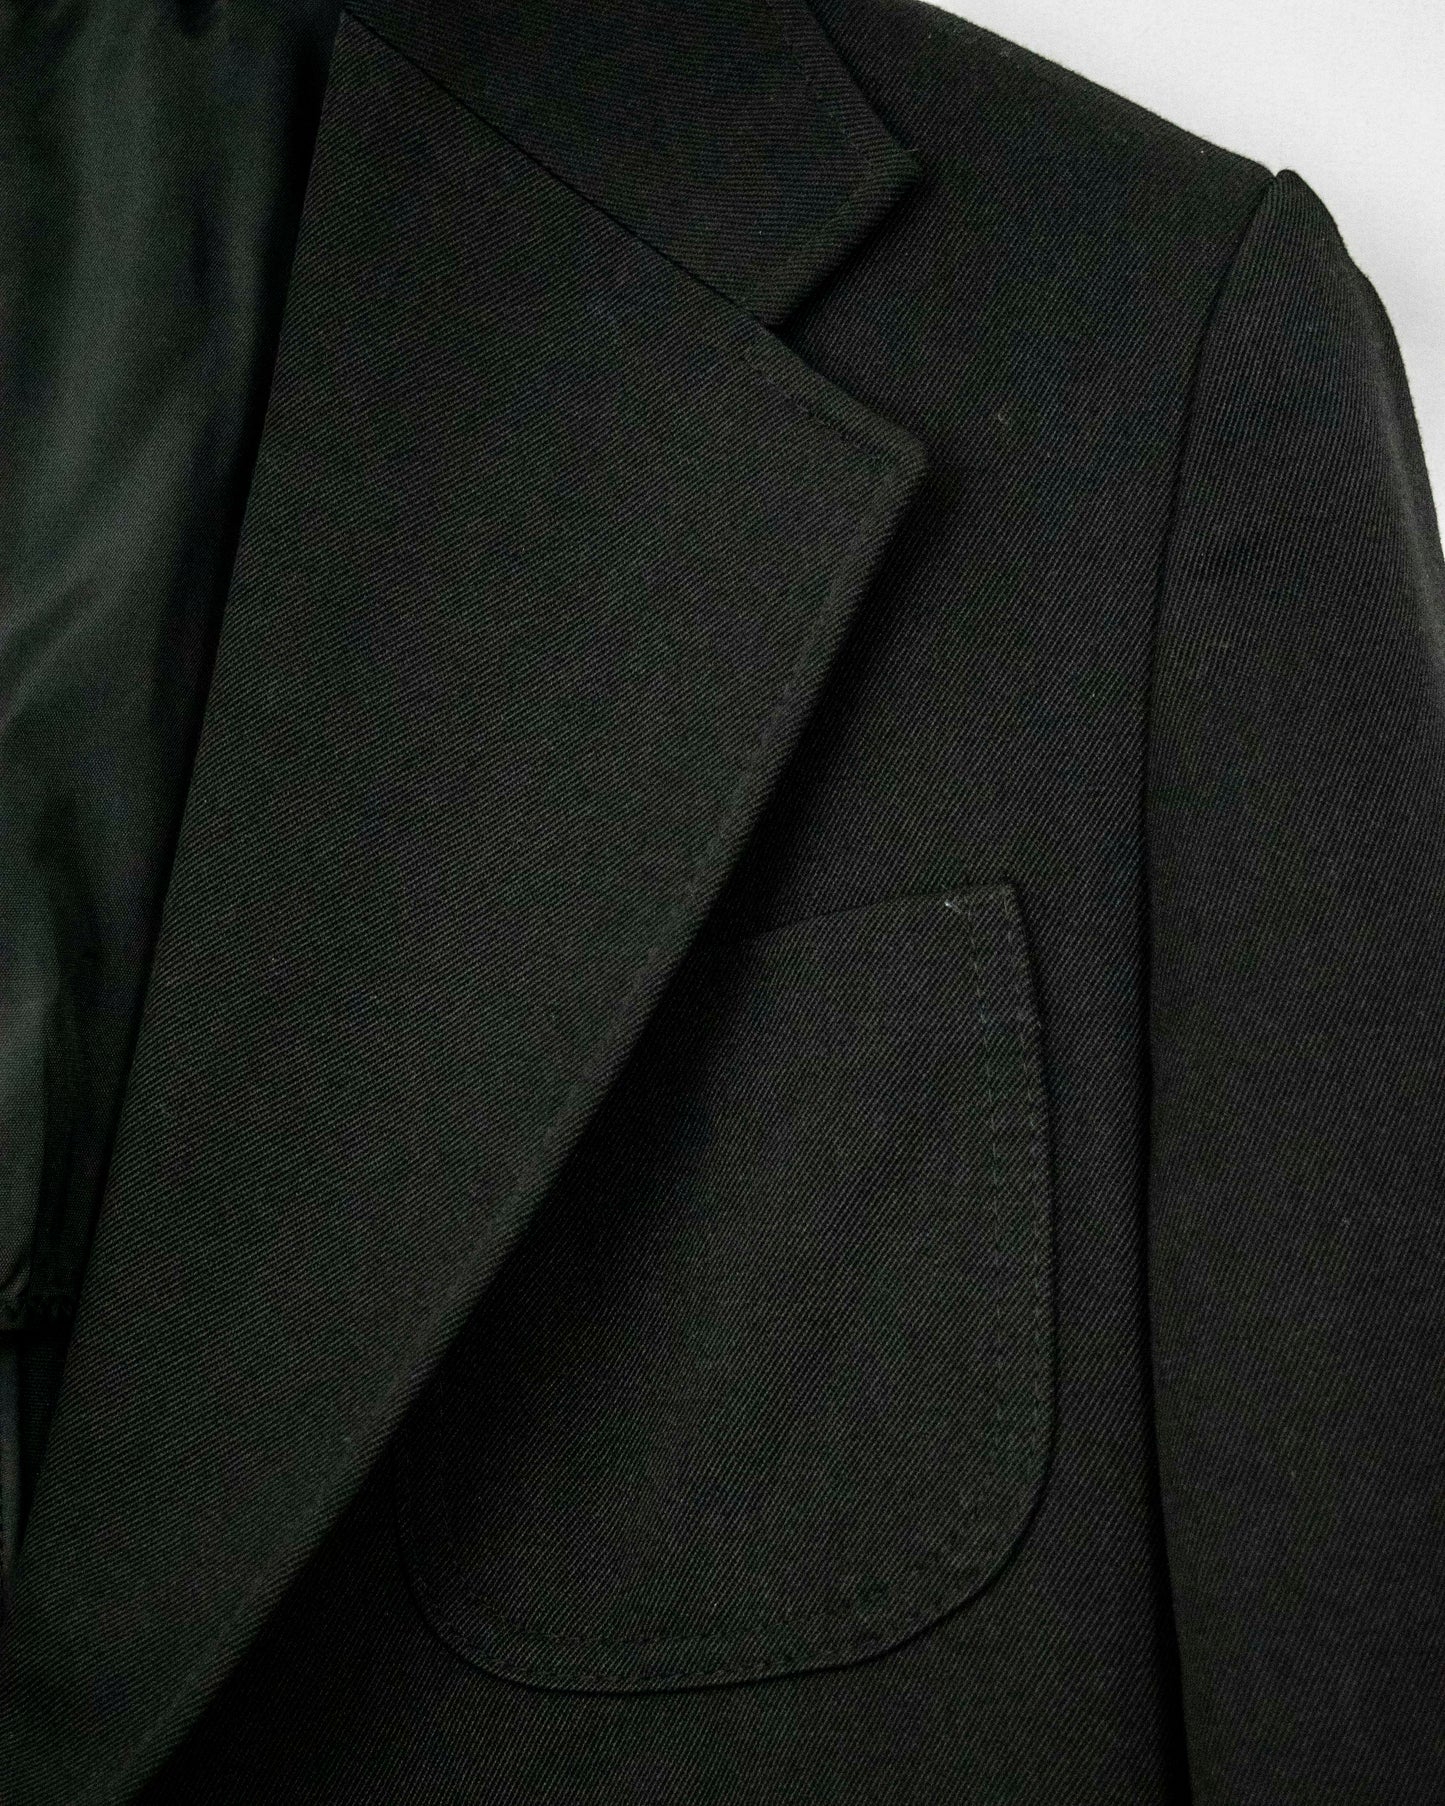 Vintage Black Jacket